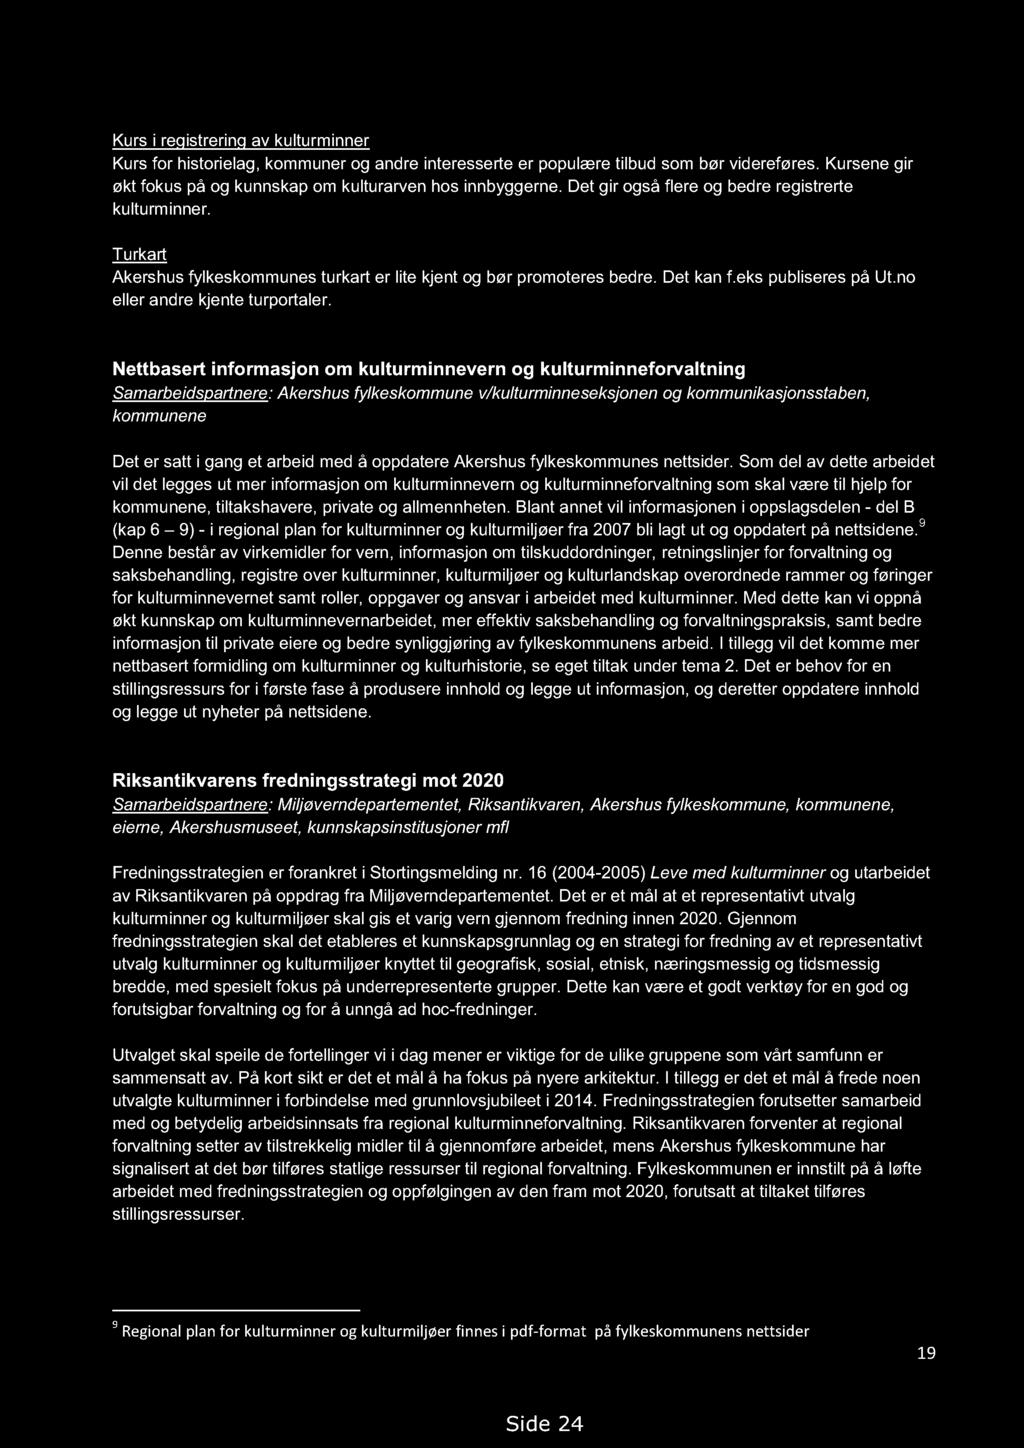 Handlingsprogram for kulturminner i Akershus 2013-2018. Høringsutkast 14.09.2012, med endringer 19.02.